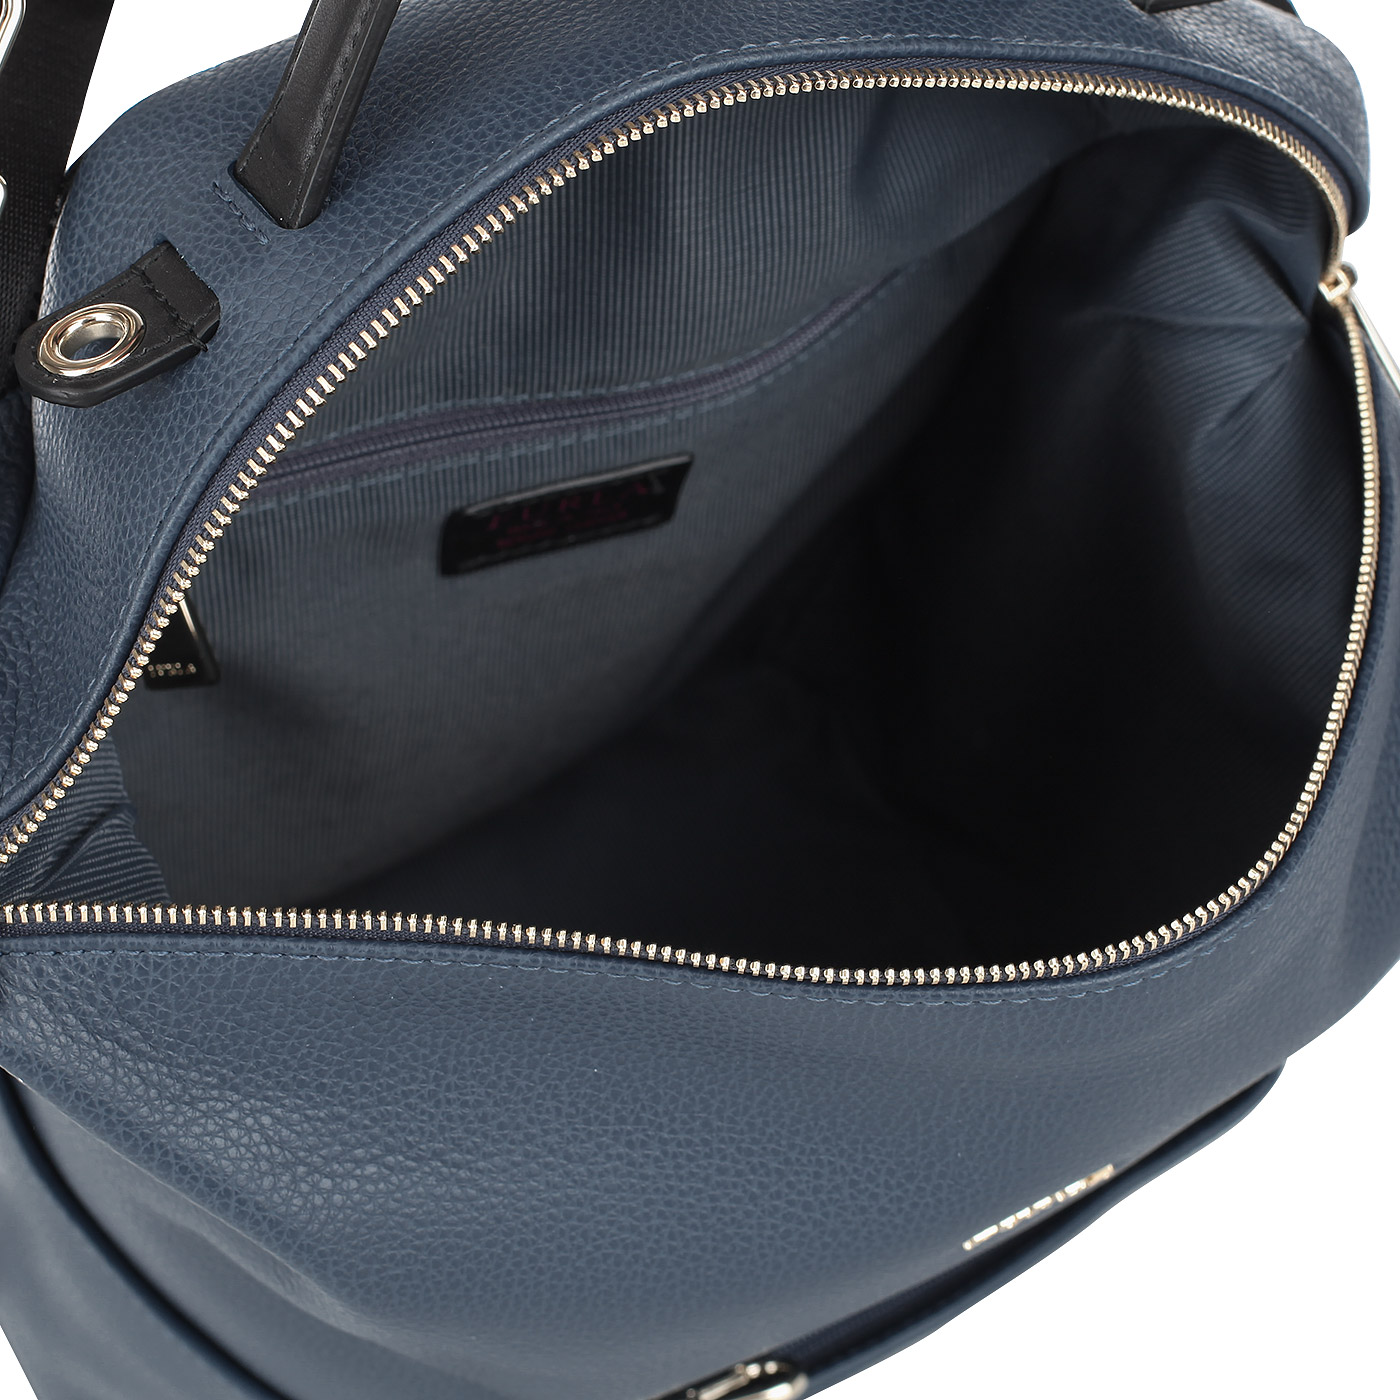 Аккуратный женский рюкзак синего цвета Furla Dafne avatar